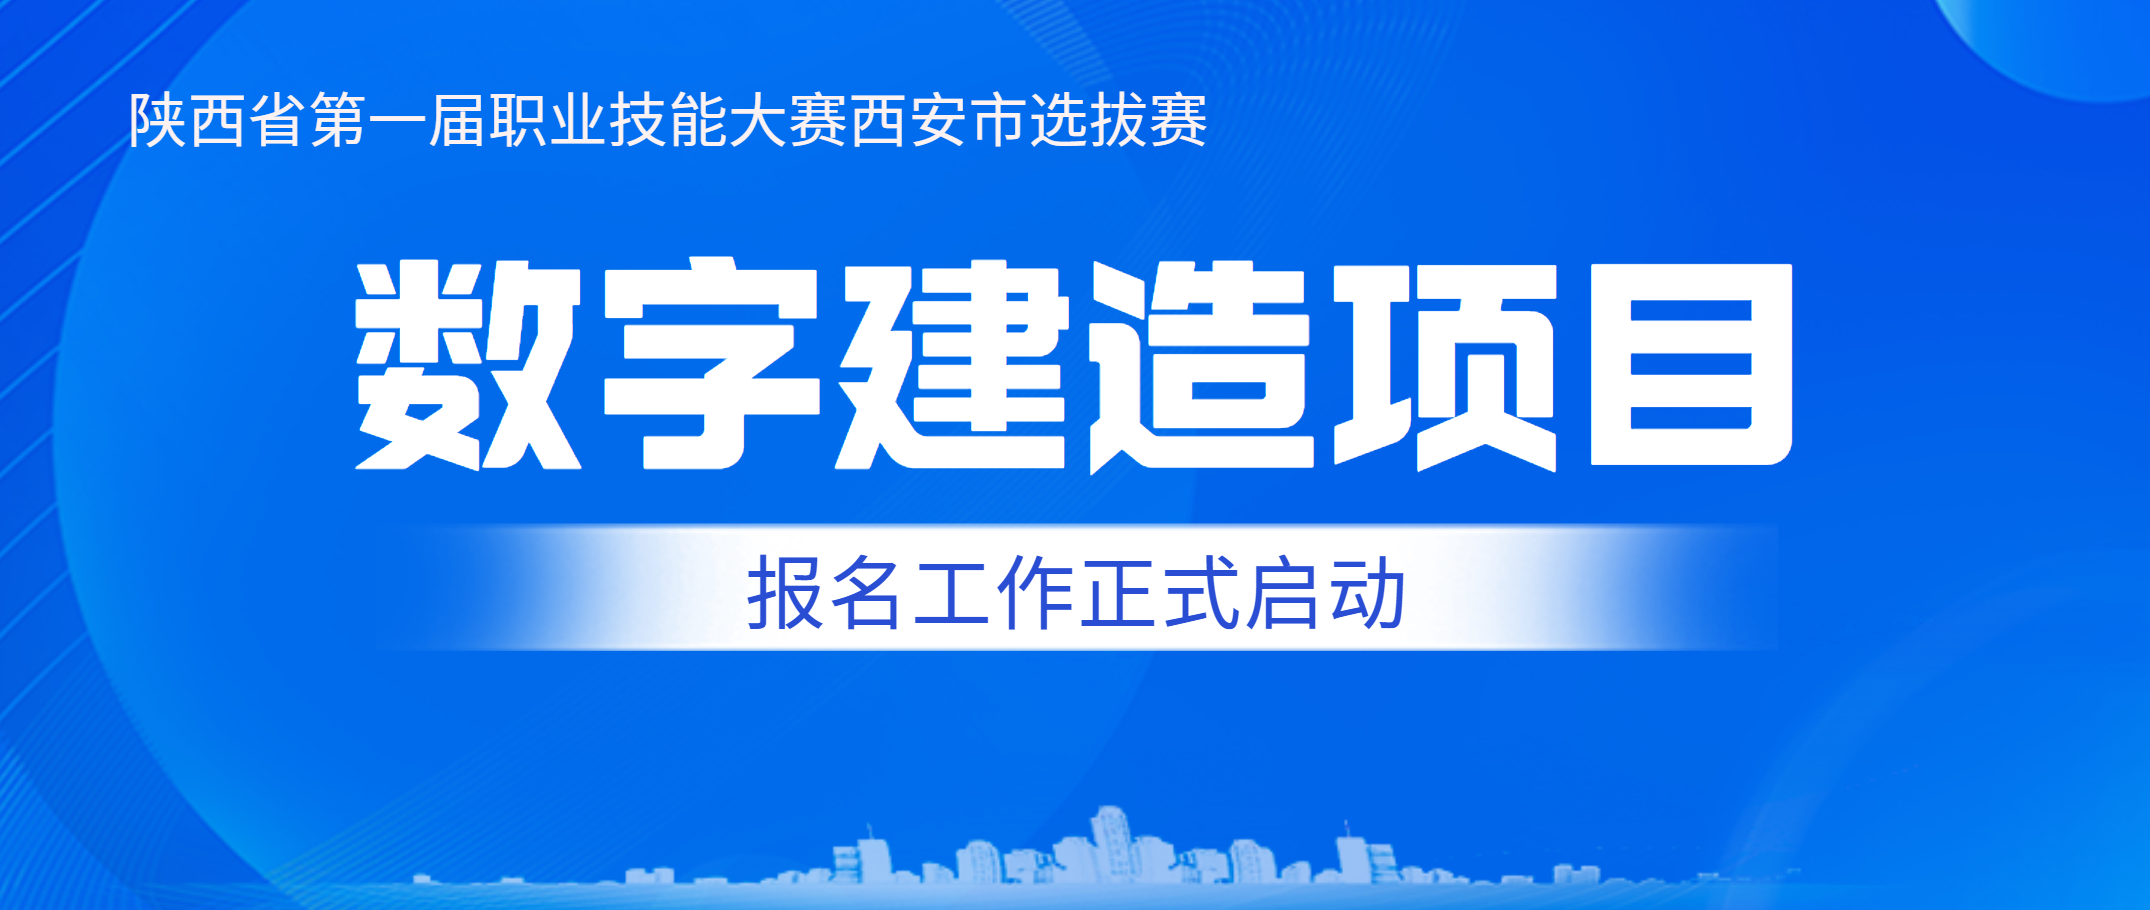 西安建筑工程技师学院承办陕西省第一届职业技能大赛西安市选拔赛数字建造赛项